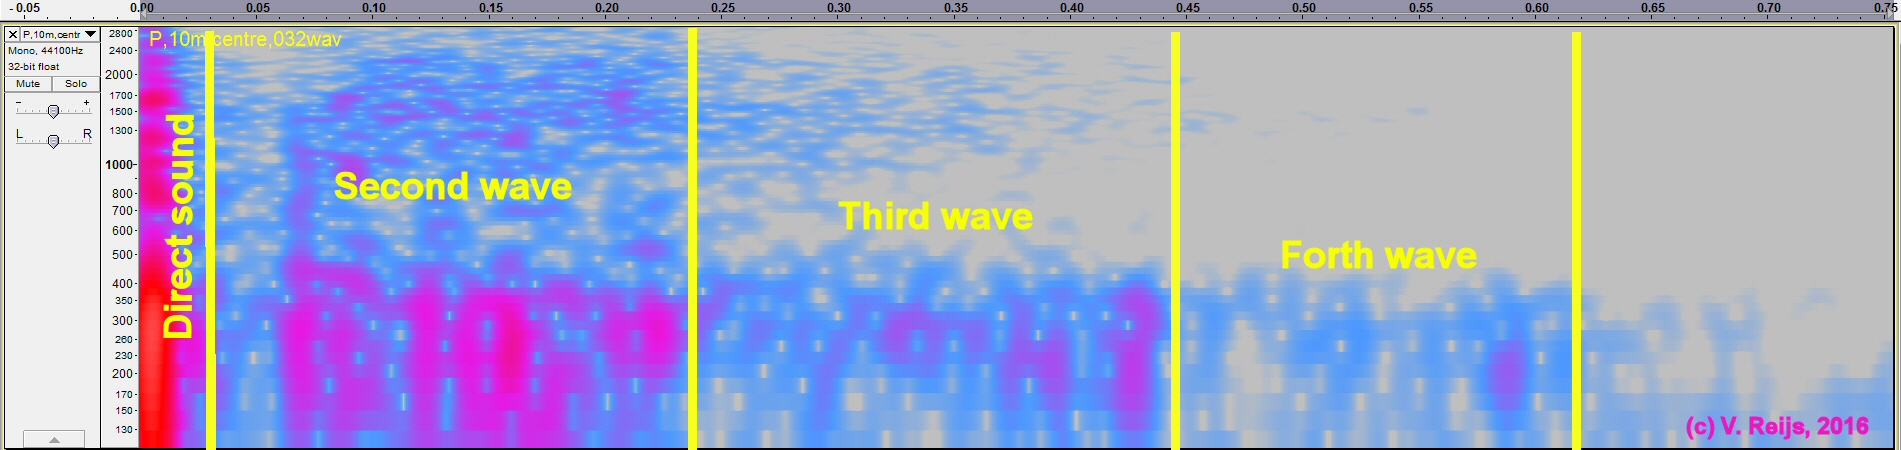 Spectrogram at 10m from centre balloon burst, Pommelte